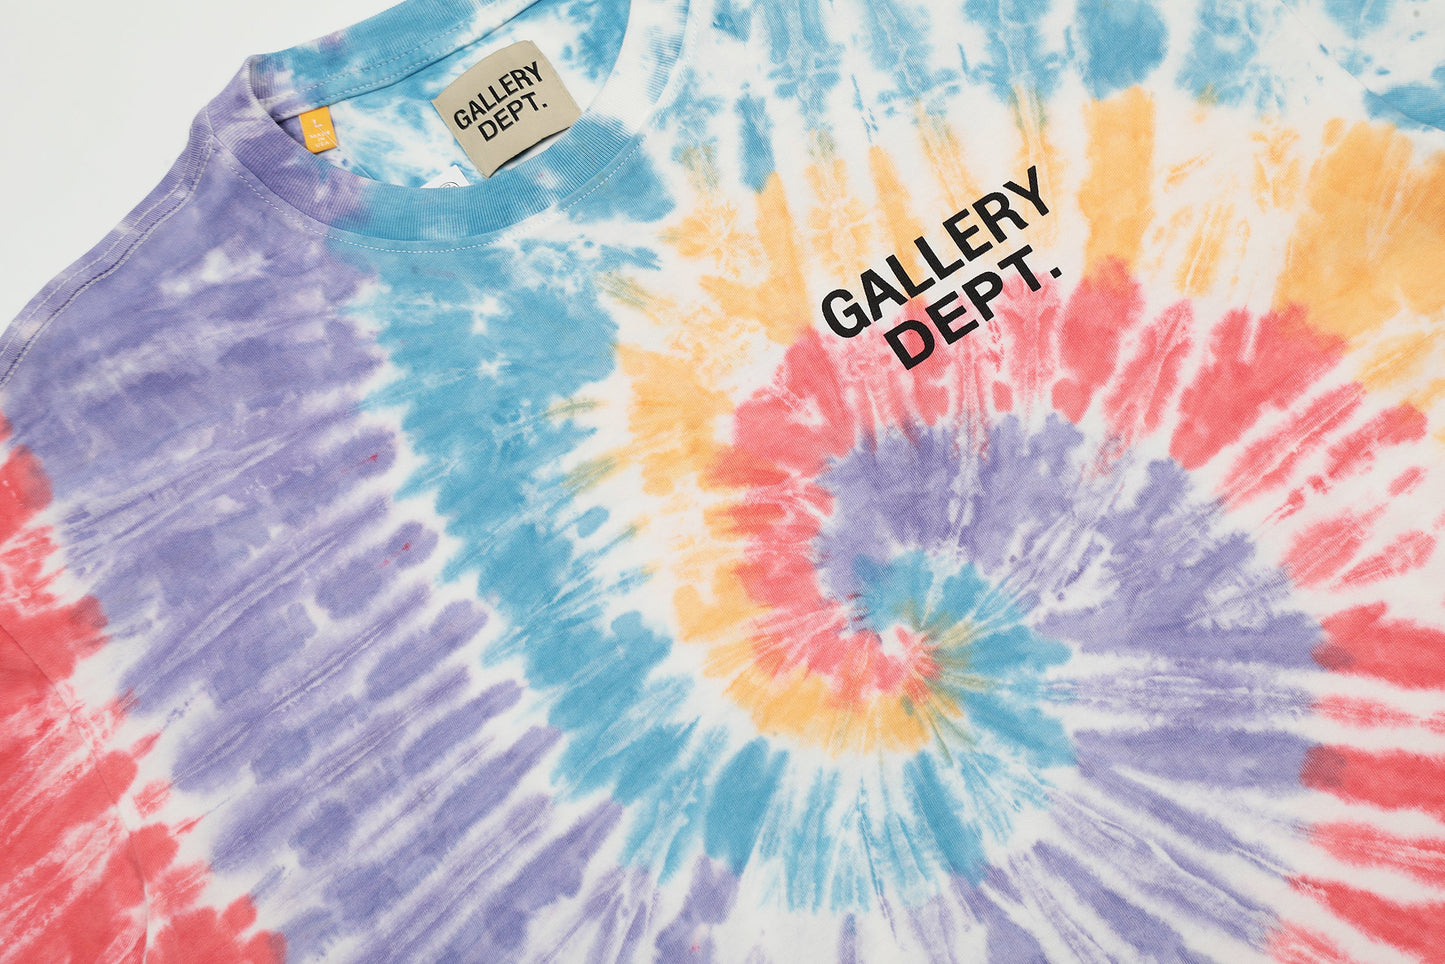 GALLERY DEPT 2024 New T-shirt  D101